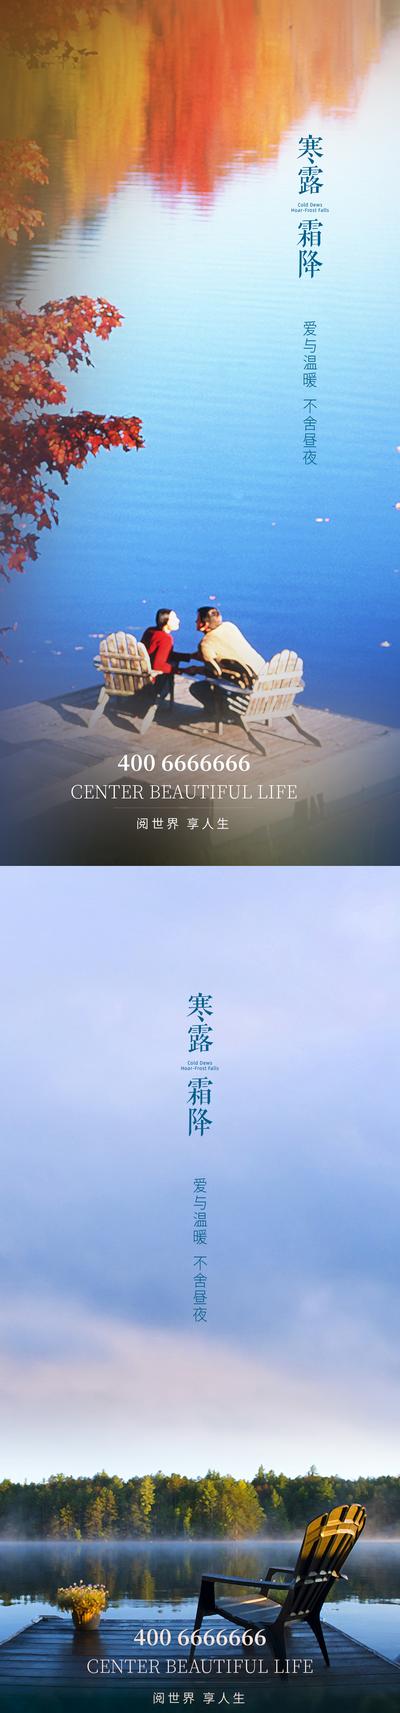 南门网 海报 二十四节气 寒露 霜降 风景 湖 系列 